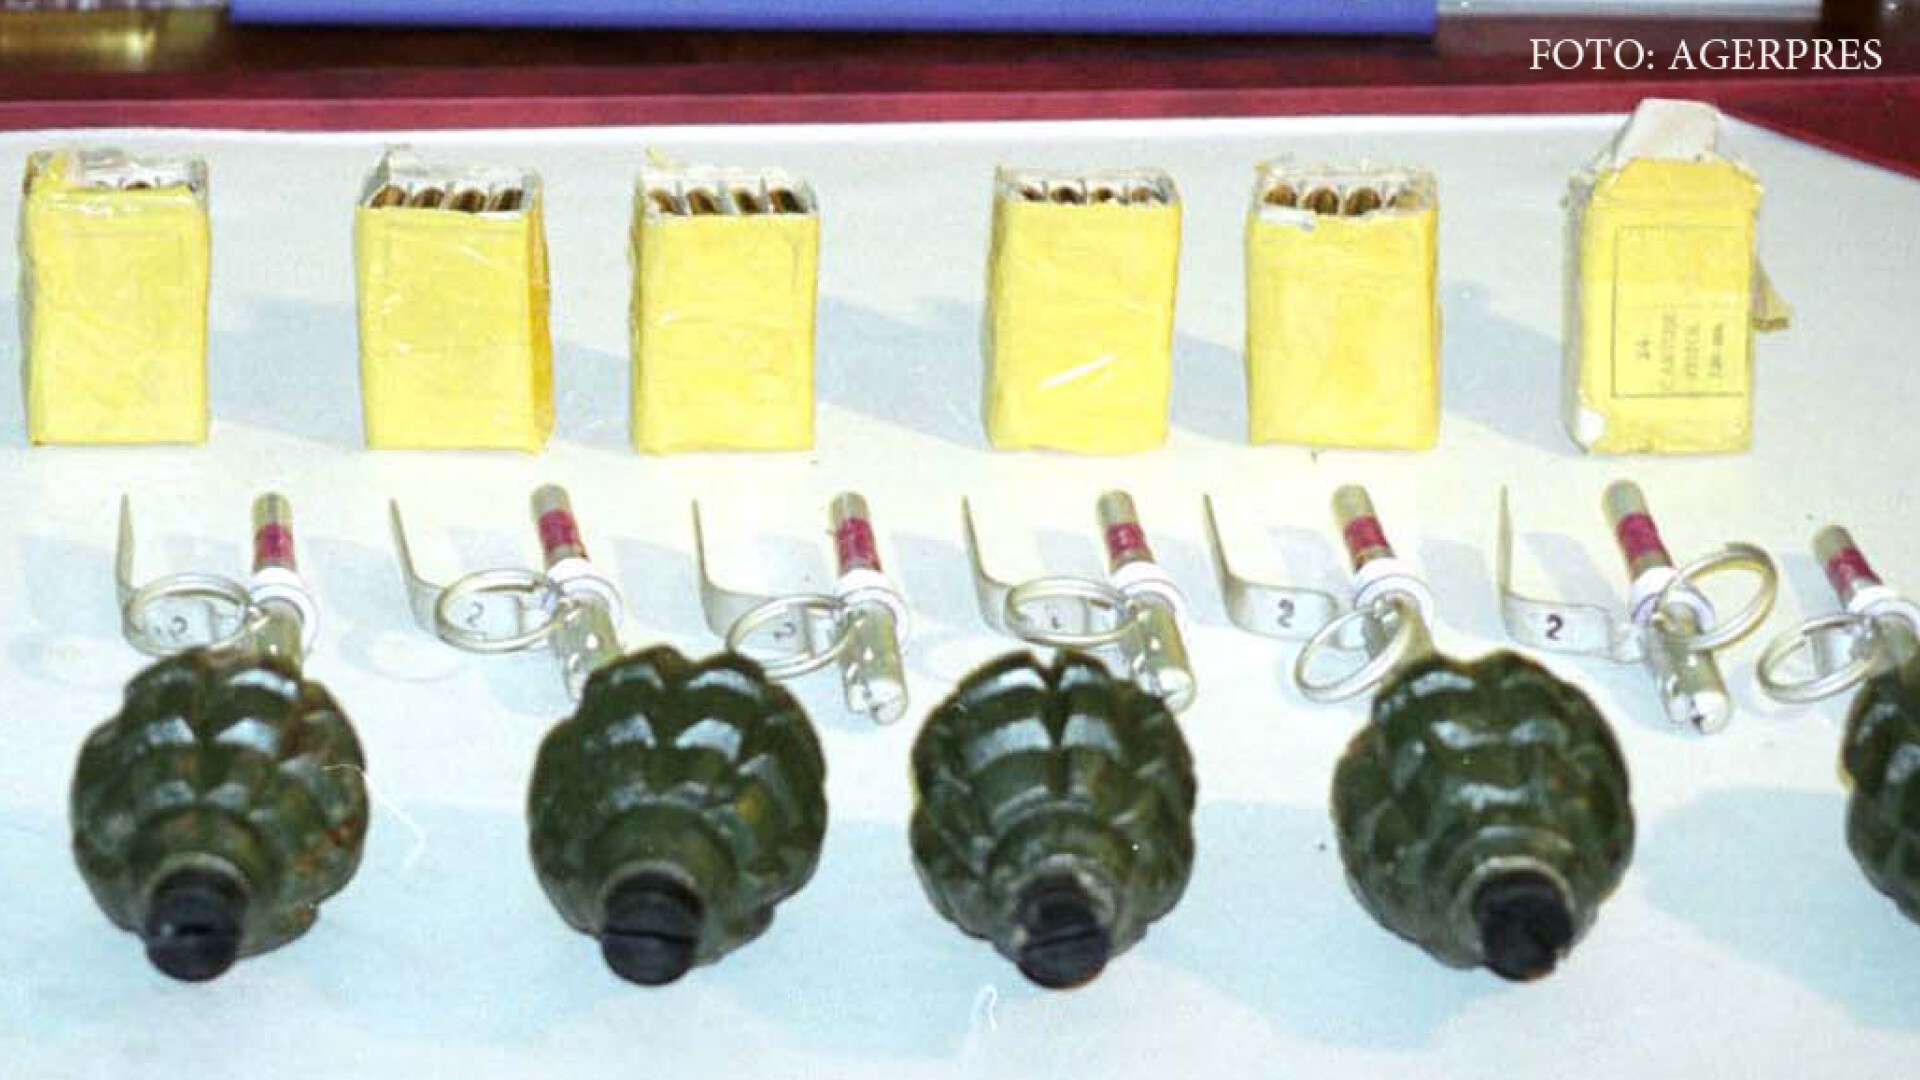 arsenalul confiscat de la Dragos Ciupercescu